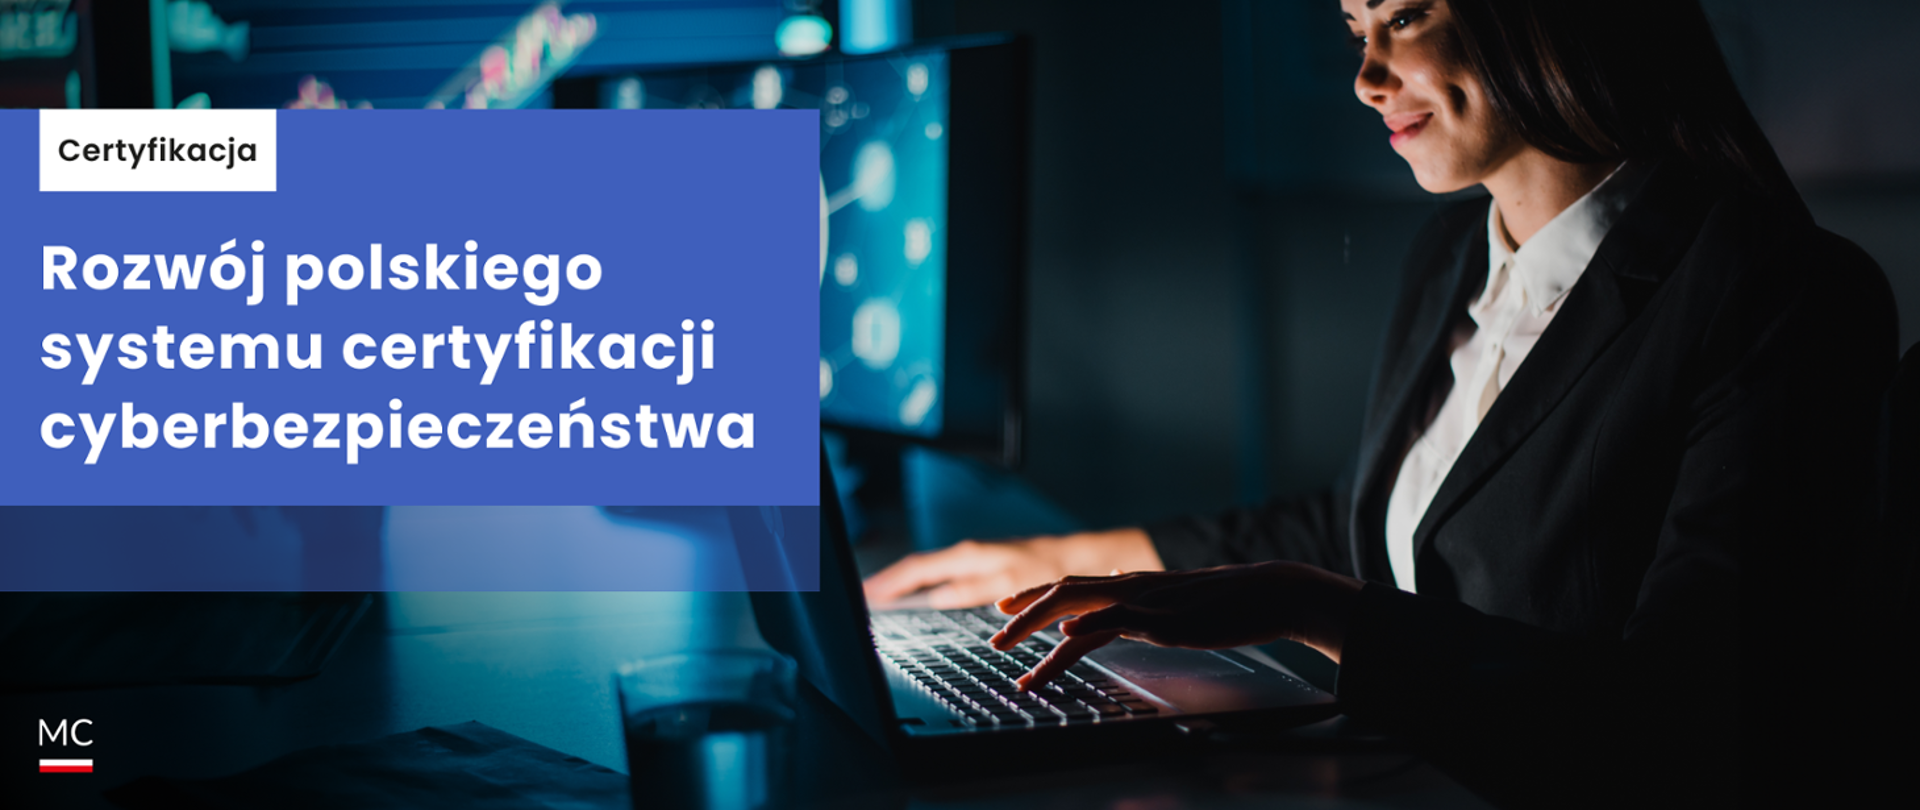 Na niebieskim tle napis: Rozwój polskiego systemu certyfikacji cyberbezpieczeństwa po prawej stronie kobieta przed laptopem